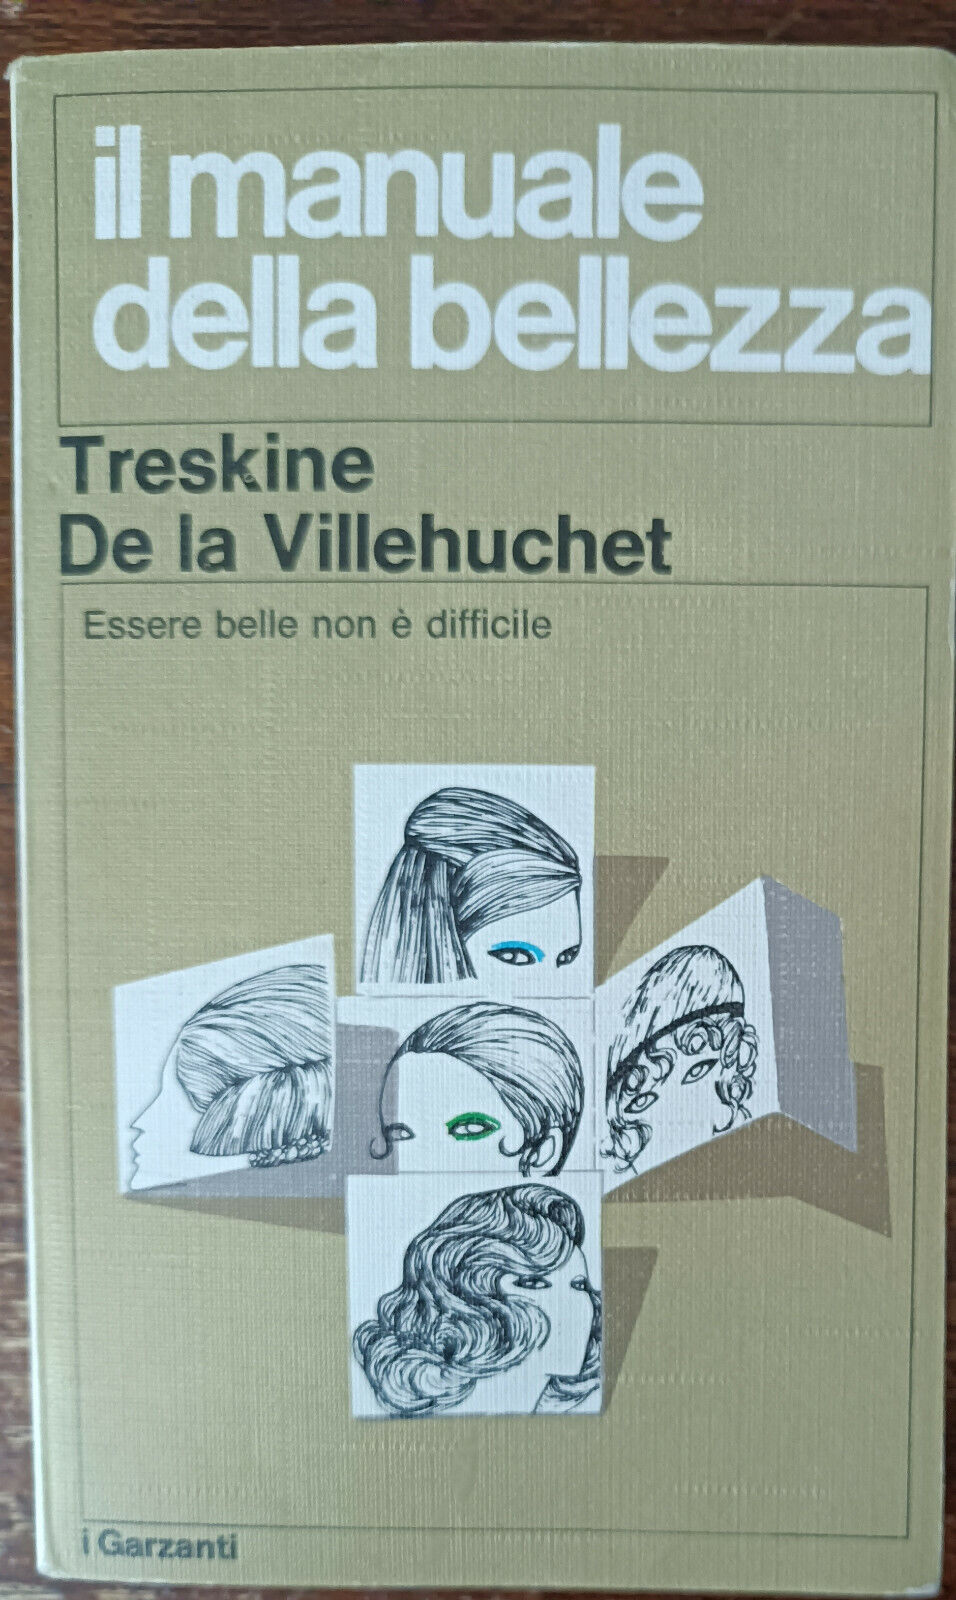 Il manuale della bellezza - Treskine De la Villehuchet - Garzanti, 1971 - A